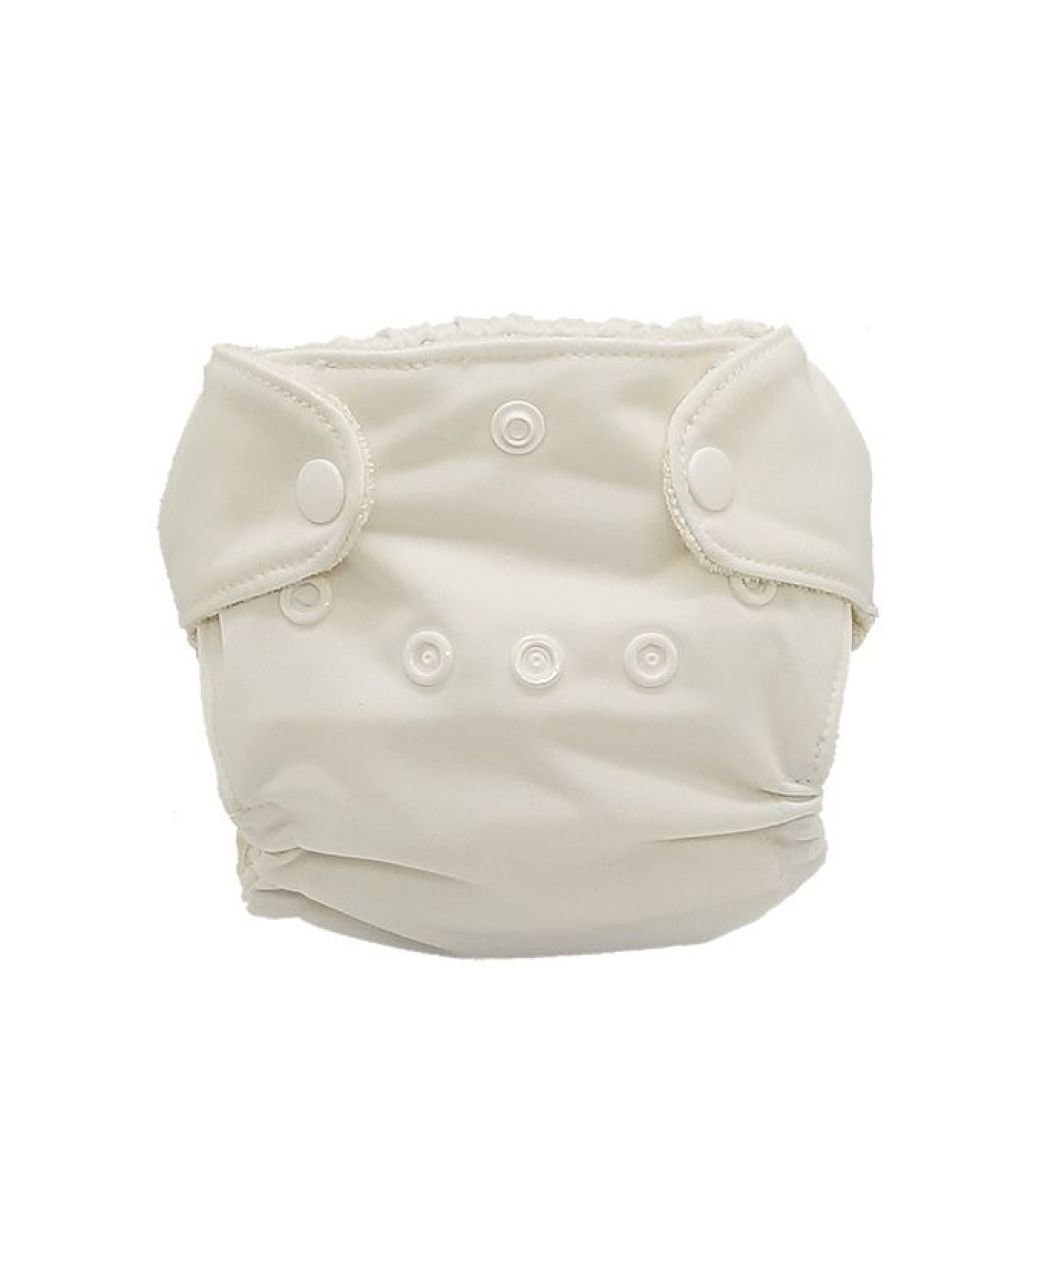 Destacada Pañal de tela prematuro y recién nacido NeoComfort - Blanco